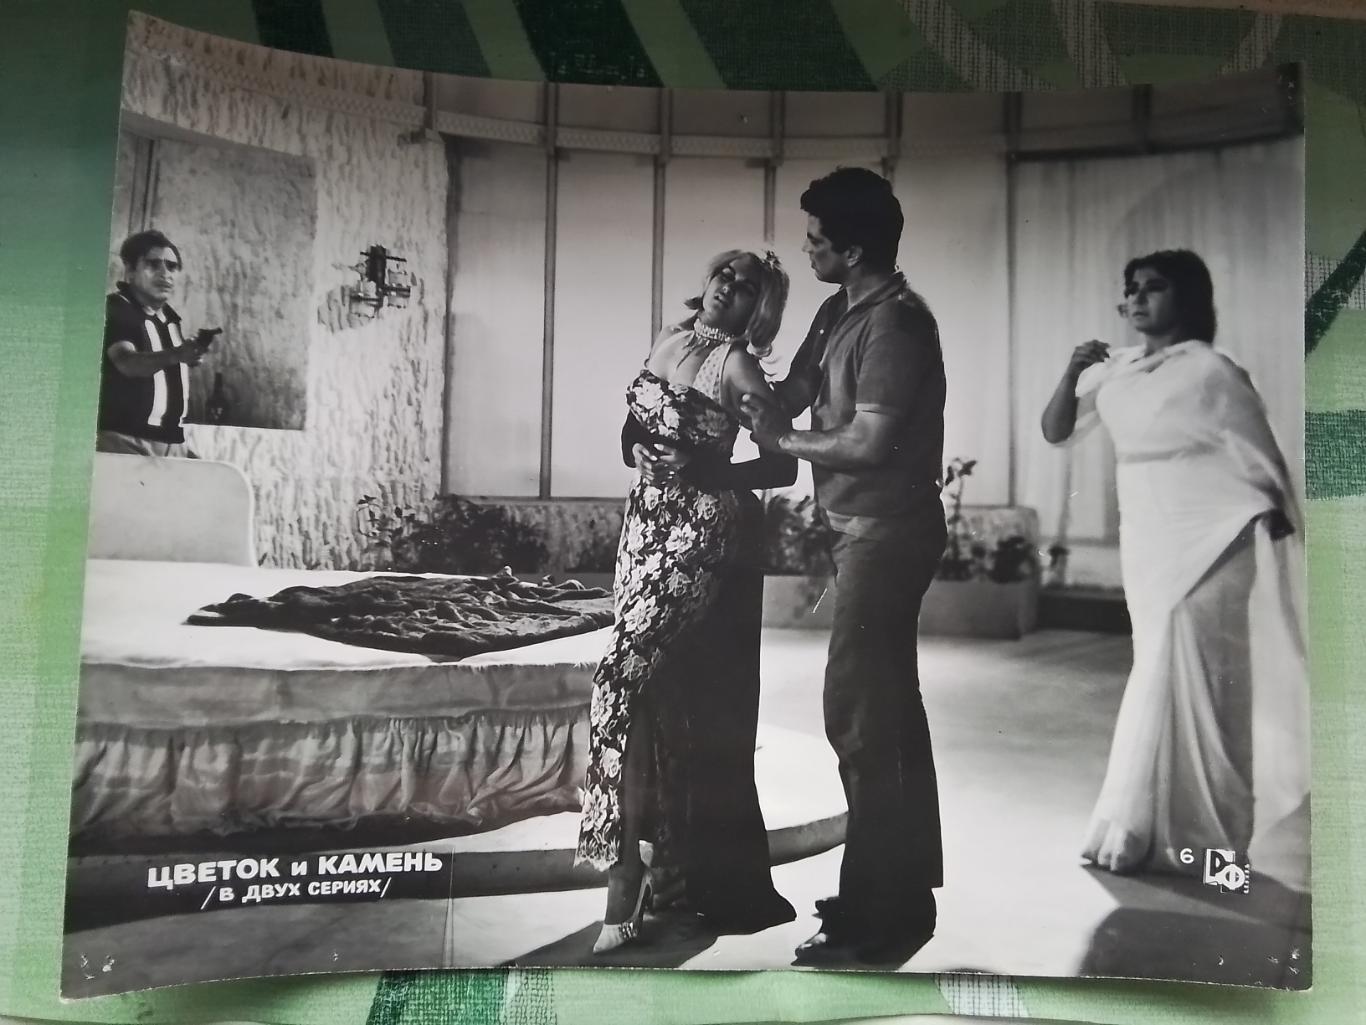 Фото 1970 года кадры Фильм Цветок и камень Индия 1966